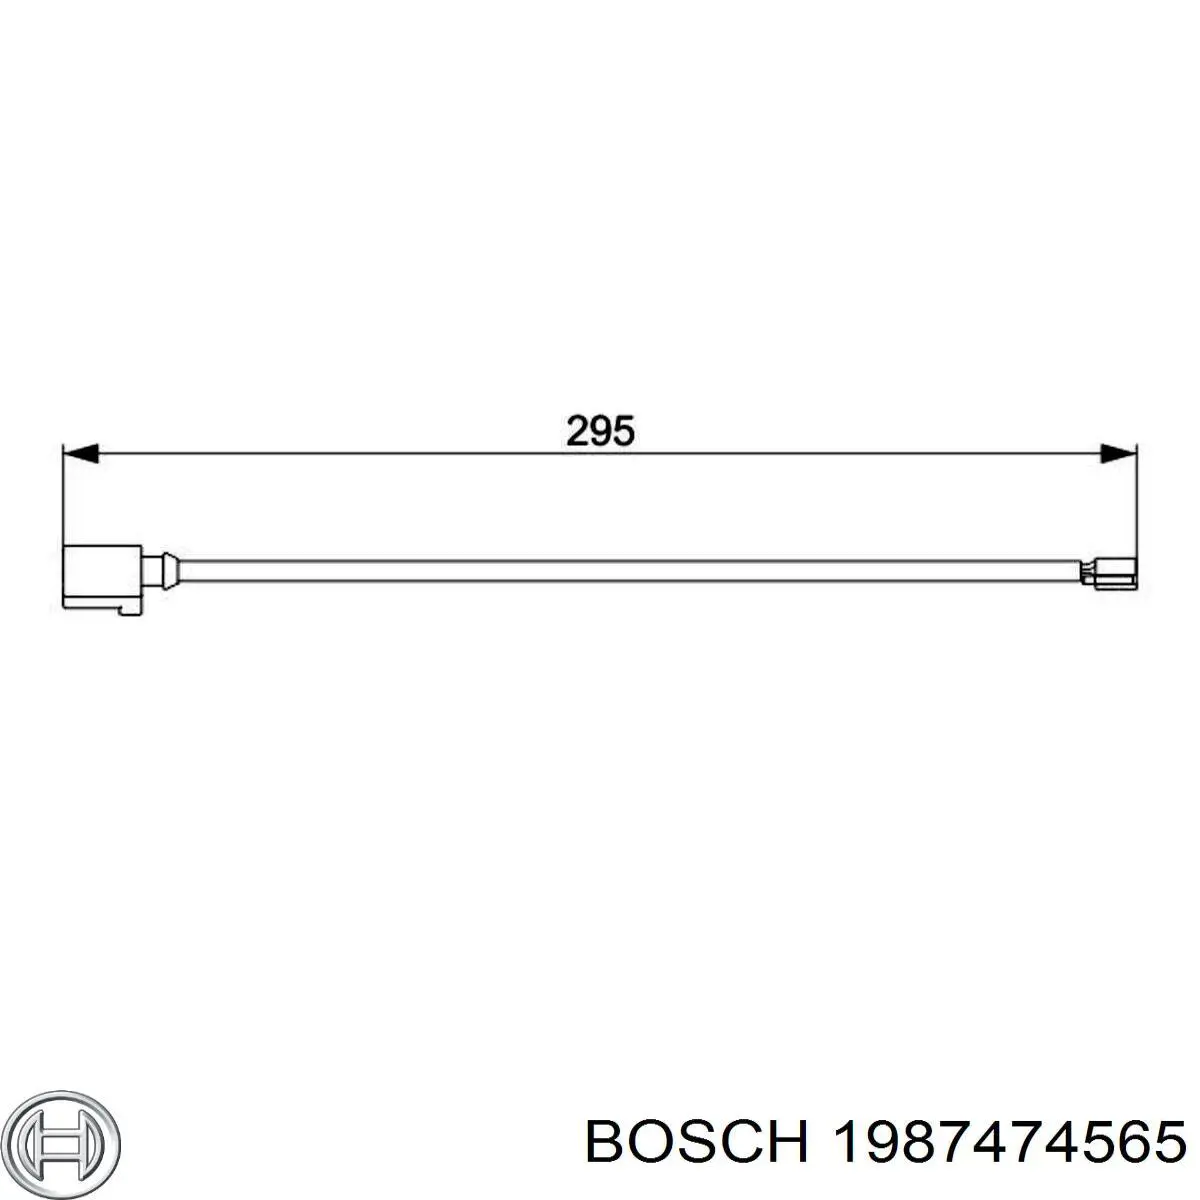 1987474565 Bosch contacto de aviso, desgaste de los frenos